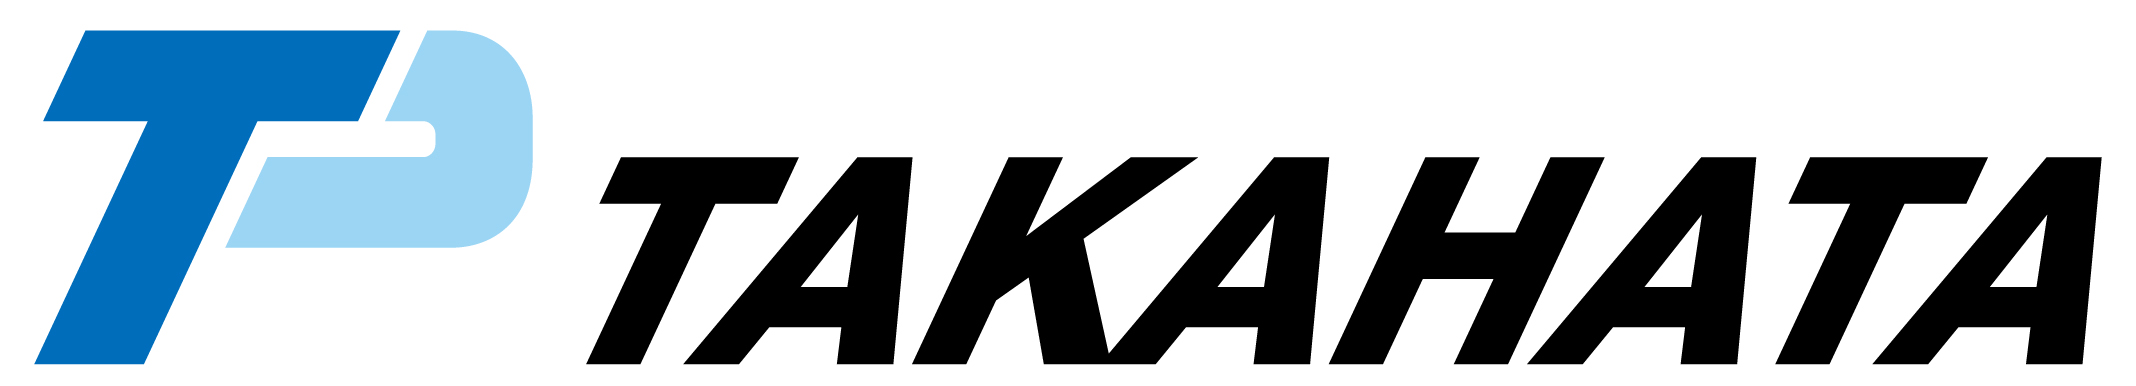 タカハタプレシジョン株式会社のロゴ画像